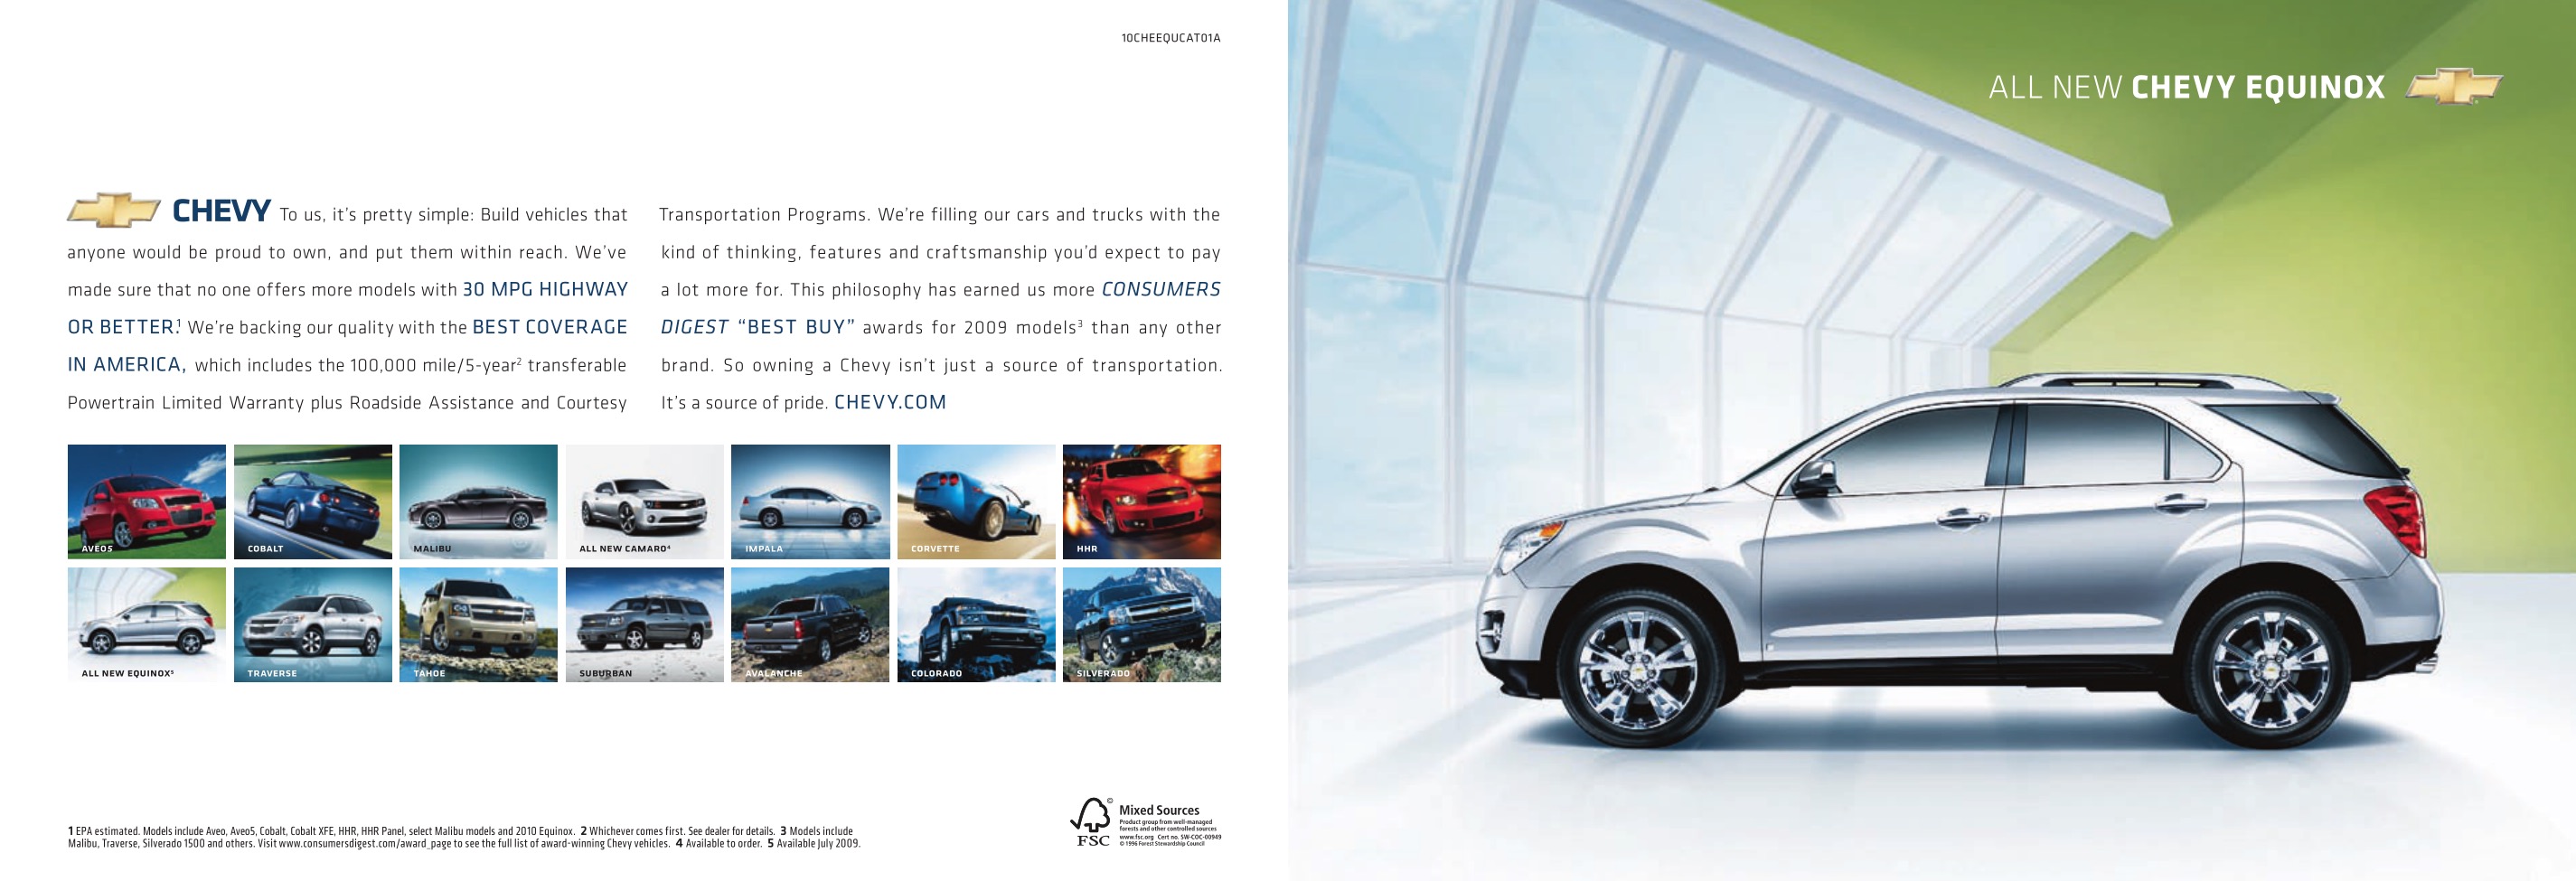 2010 Chevrolet Equinox Brochure Page 10